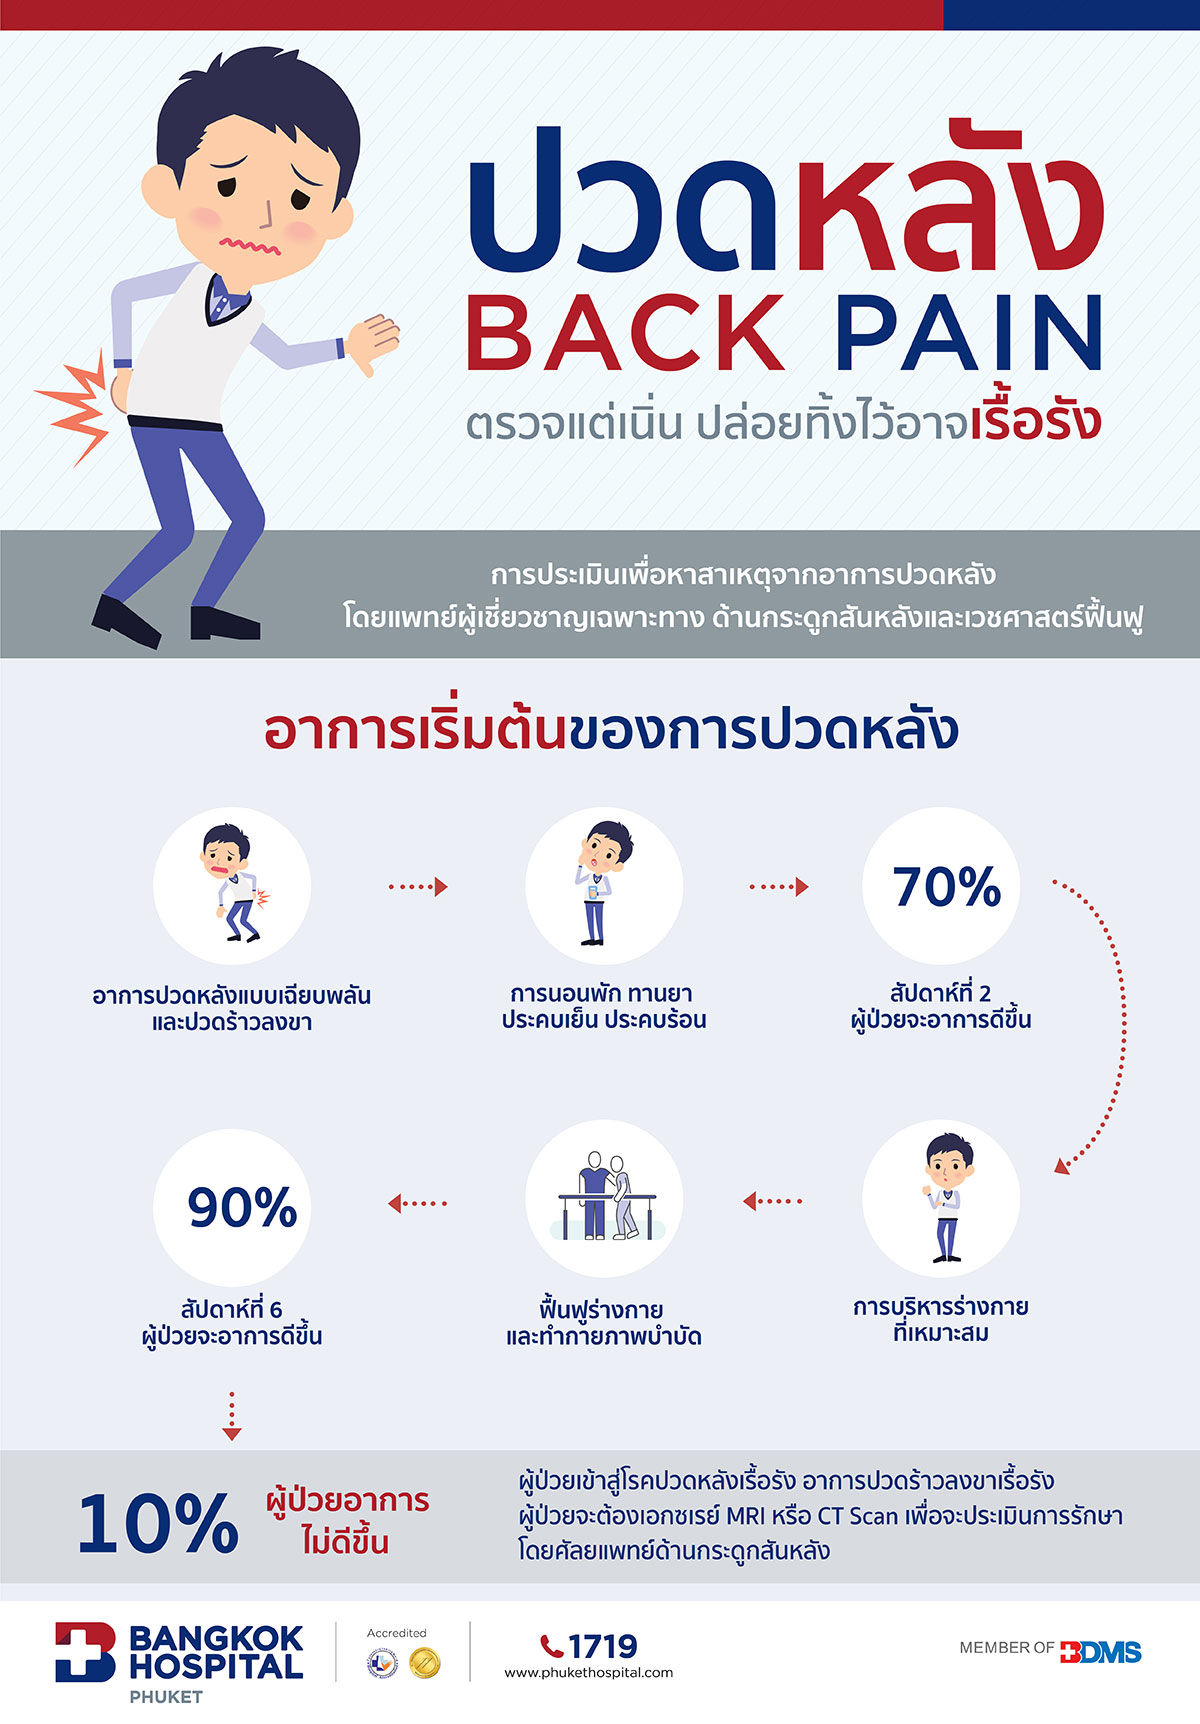 ปวดหลัง (Back pain) ควรตรวจแต่เนิ่น ๆ หากปล่อยทิ้งไว้อาจปวดเรื้อรัง